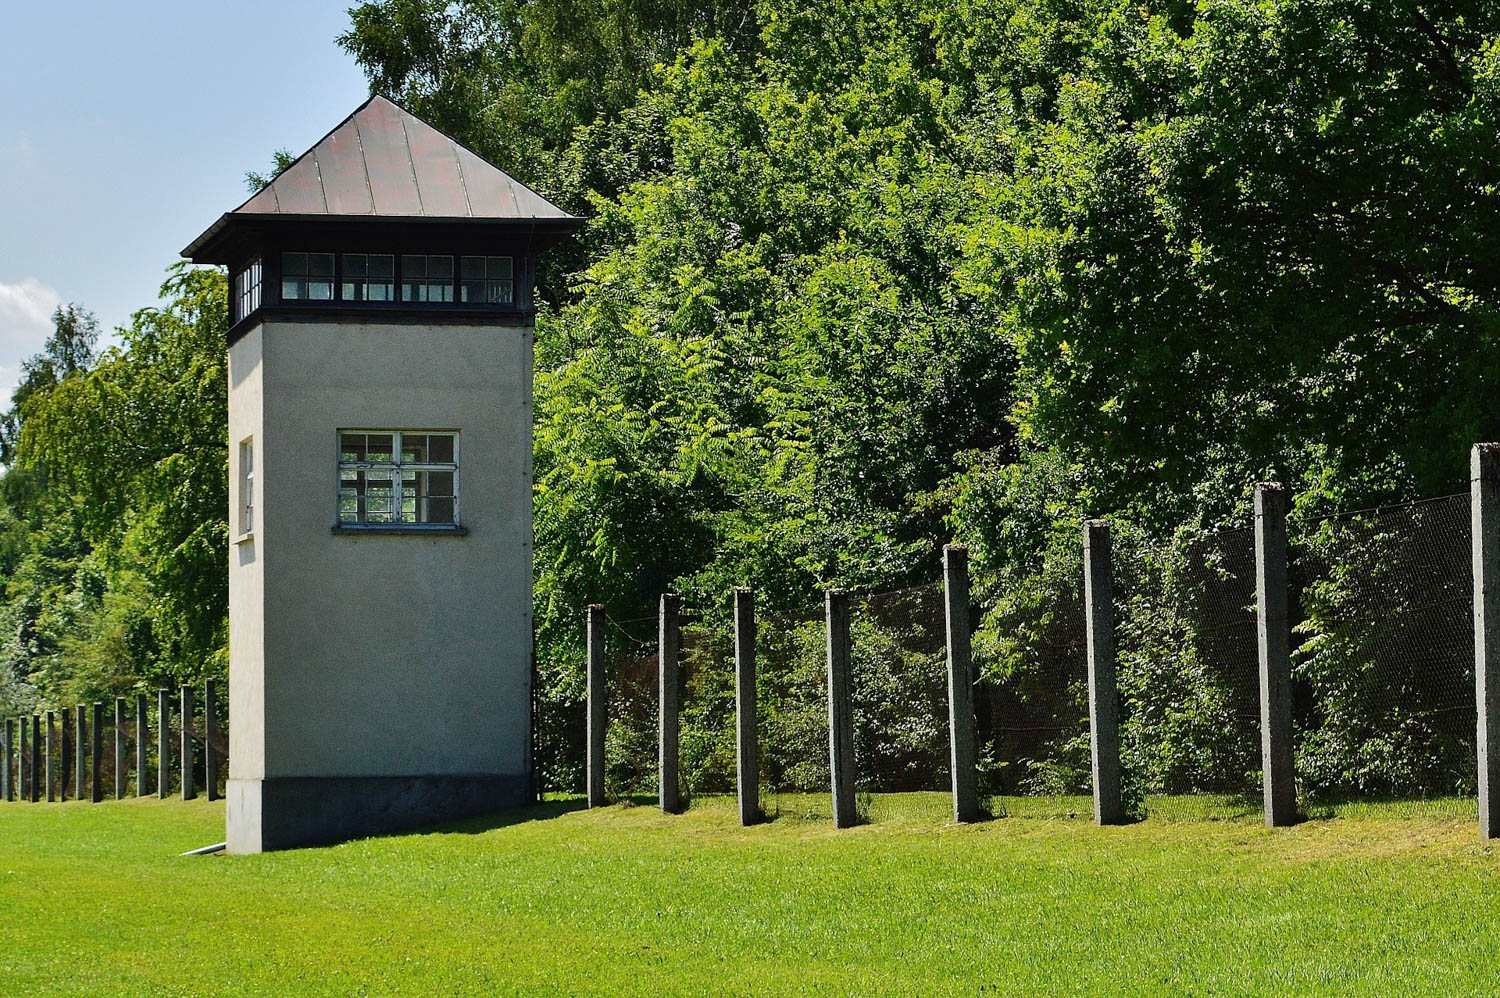 Dachau watchtower by Alexas_fotos